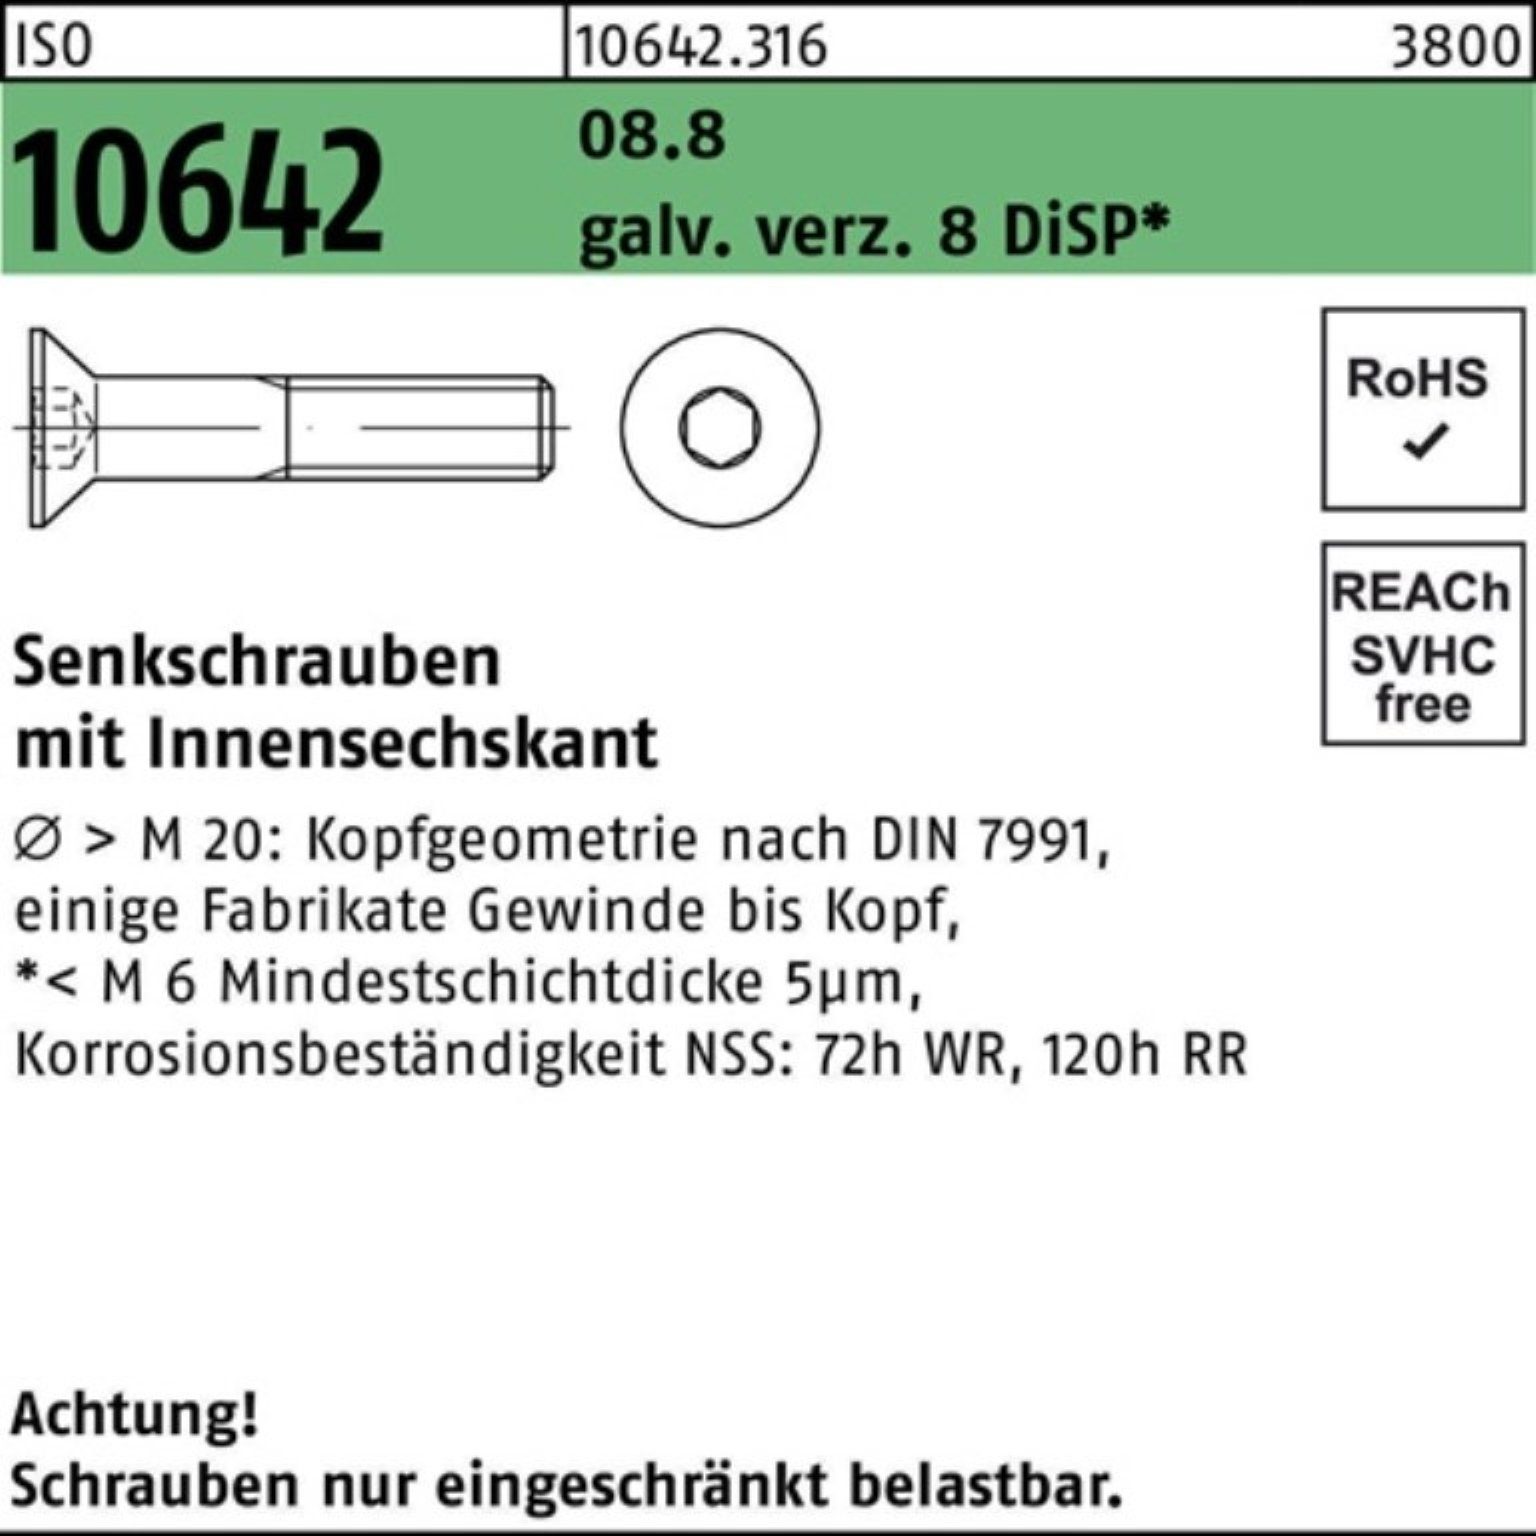 galv.verz. Senkschraube Pack Reyher Senkschraube DiS ISO Innen-6kt M5x10 10642 8.8 8 500er